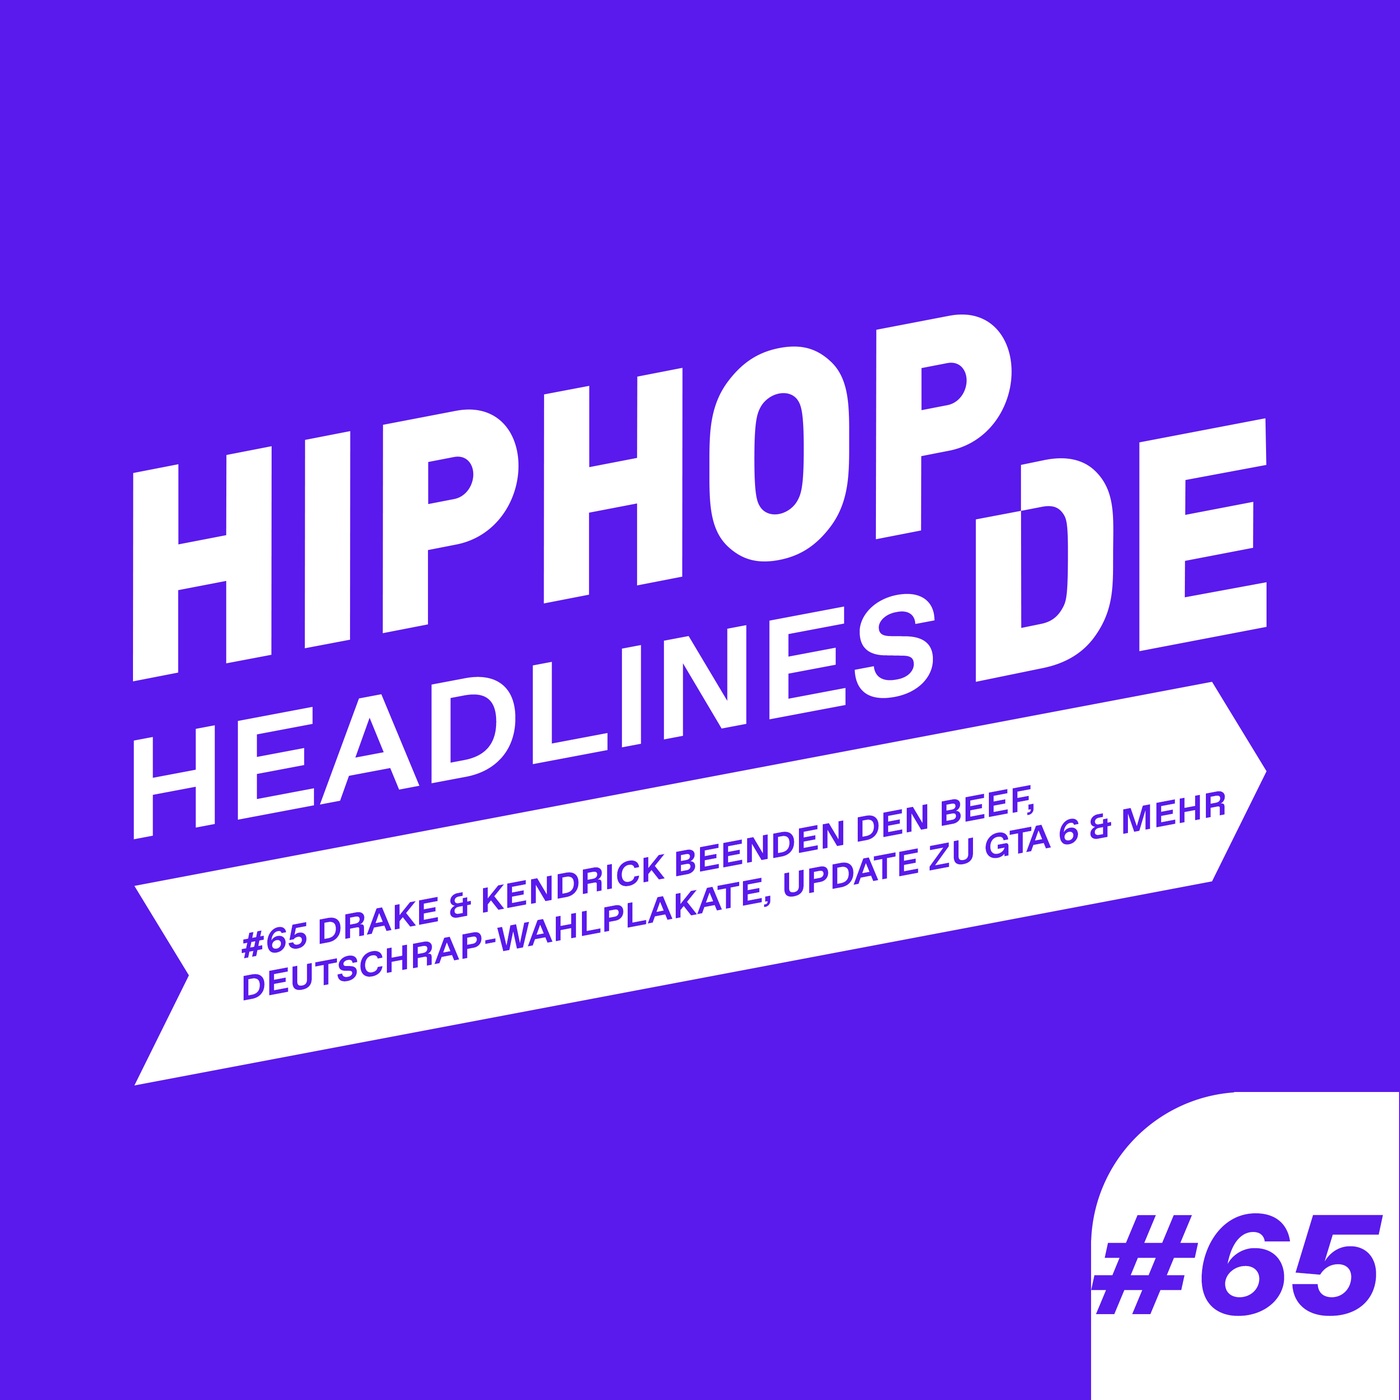 #65 Drake & Kendrick beenden den Beef, Deutschrap-Wahlplakate & mehr